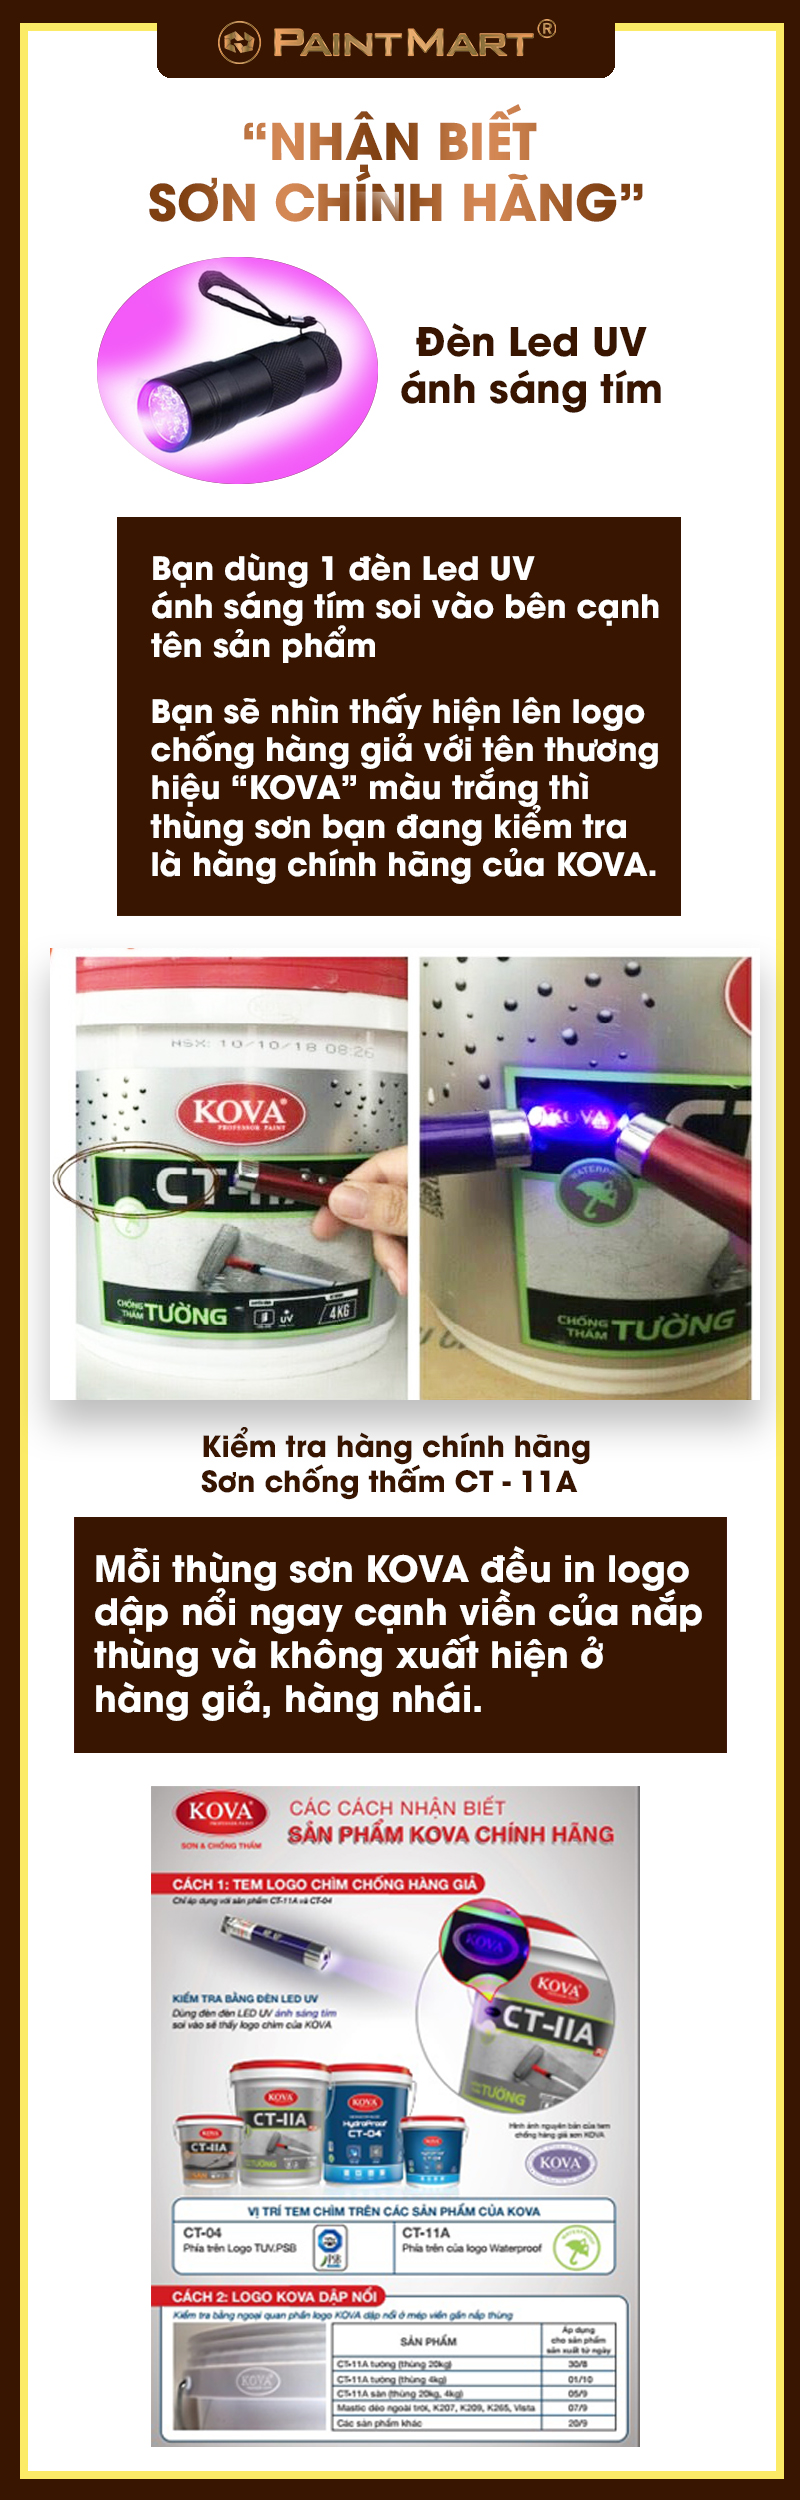 Nhận biết sơn KOVA chính hãng:
Sơn Kova chính hãng đảm bảo độ bền cao và giá trị sử dụng lâu dài, đặc biệt là cho công trình xây dựng. Nếu bạn đang tìm kiếm sơn Kova để sử dụng cho công việc của mình, hãy tìm hiểu và nhận biết những đặc điểm của sản phẩm chính hãng này.